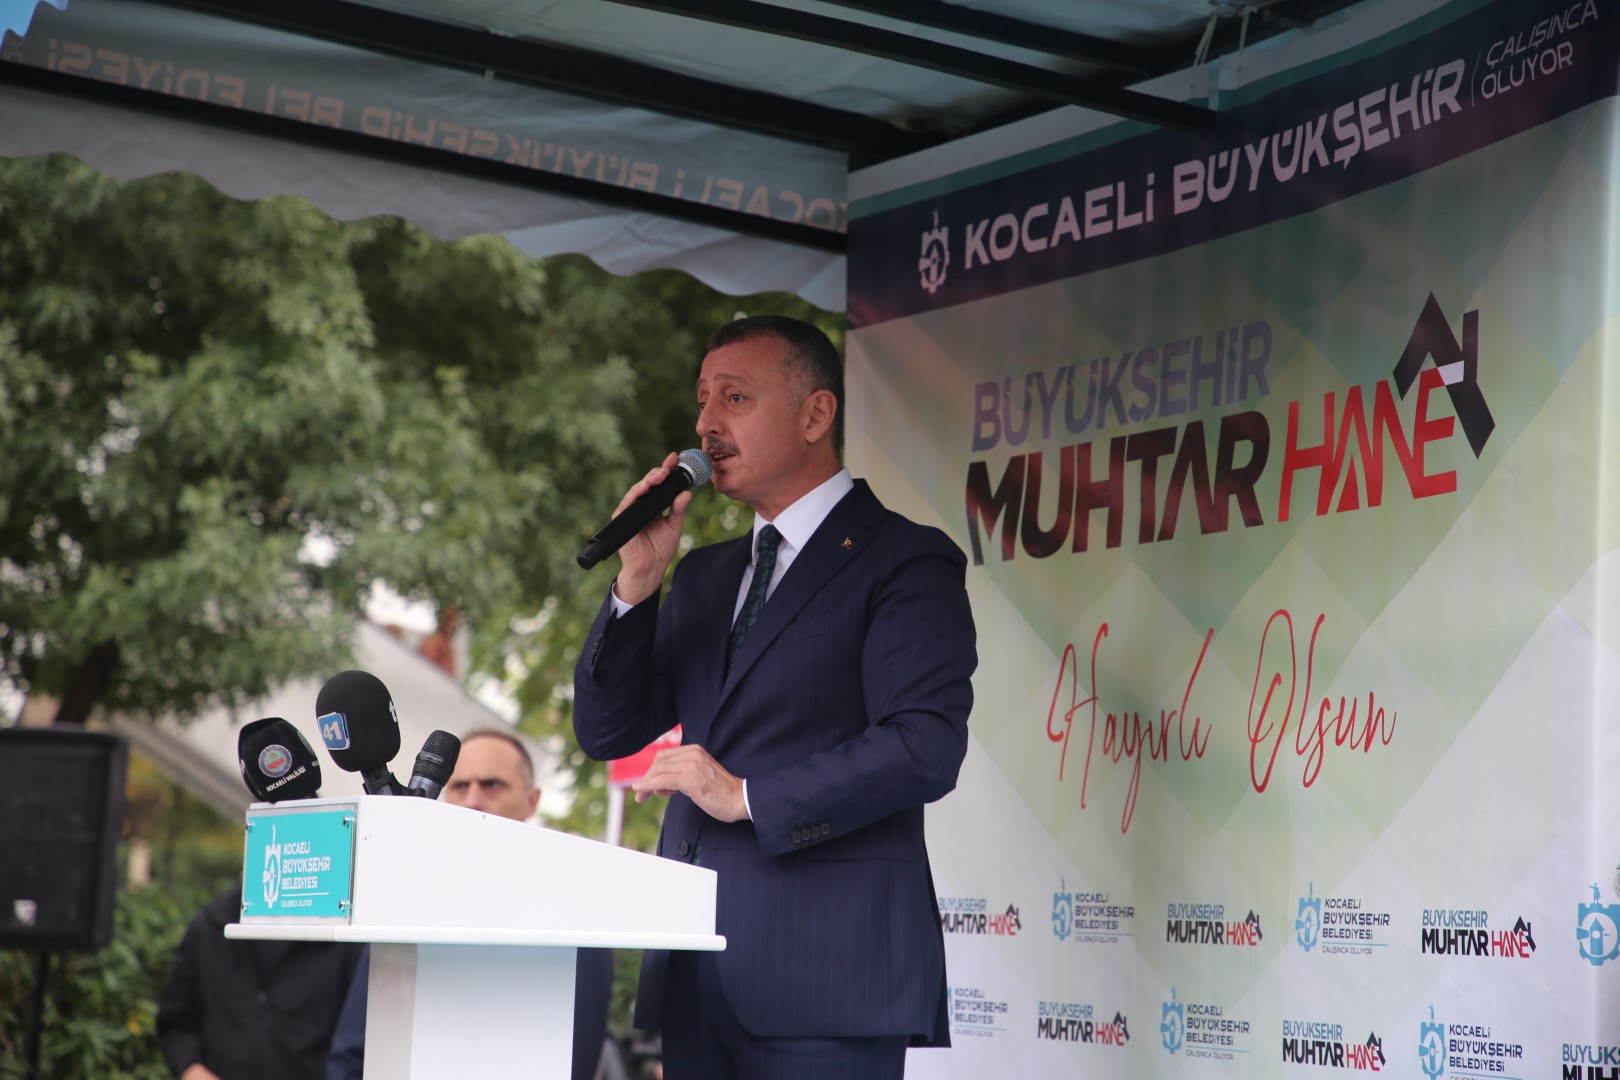 Başkan Büyükakın: “Muhtarhane, Türkiye’de bir ilktir!”